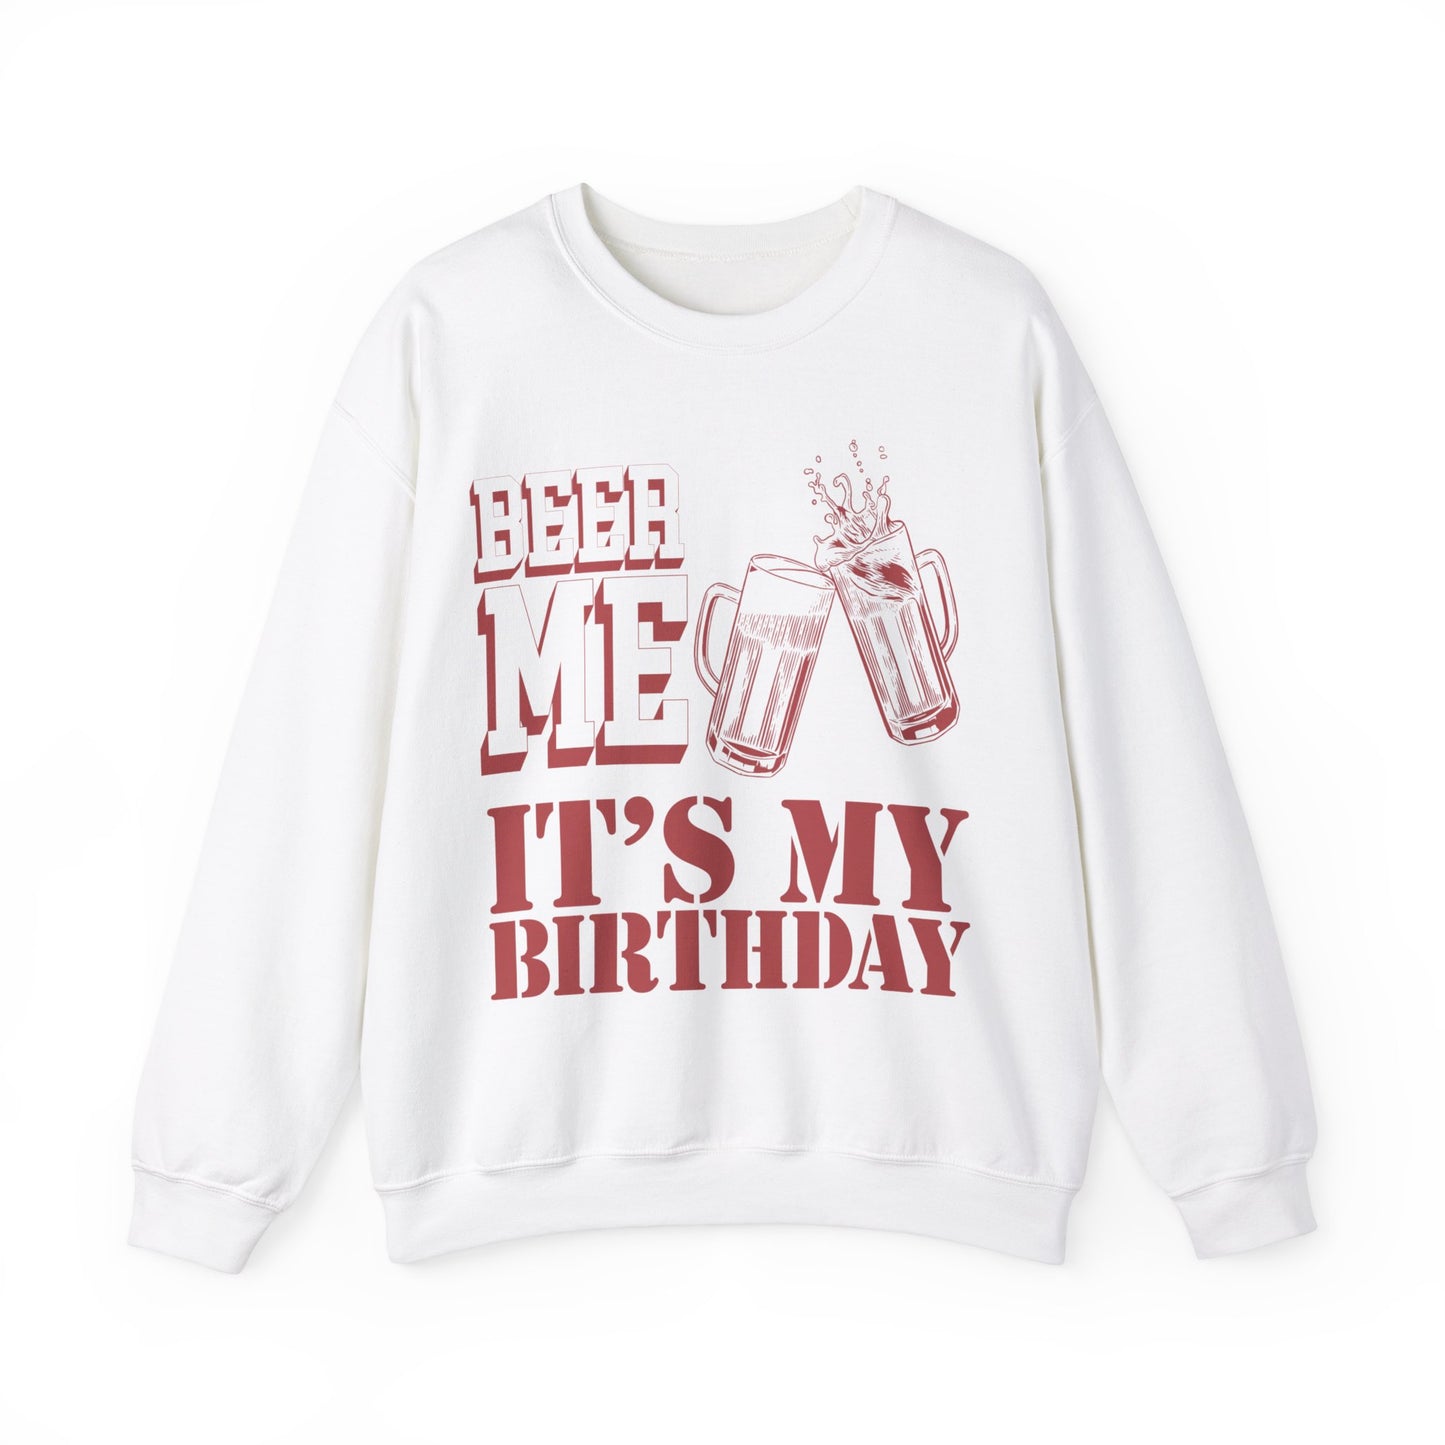 Beer Me It's My Birthday Sweatshirt, Funny Birthday Shirt for Dad, Funny Dad's Birthday Sweatshirt, Best Beer Lover Dad Sweatshirt, S1572